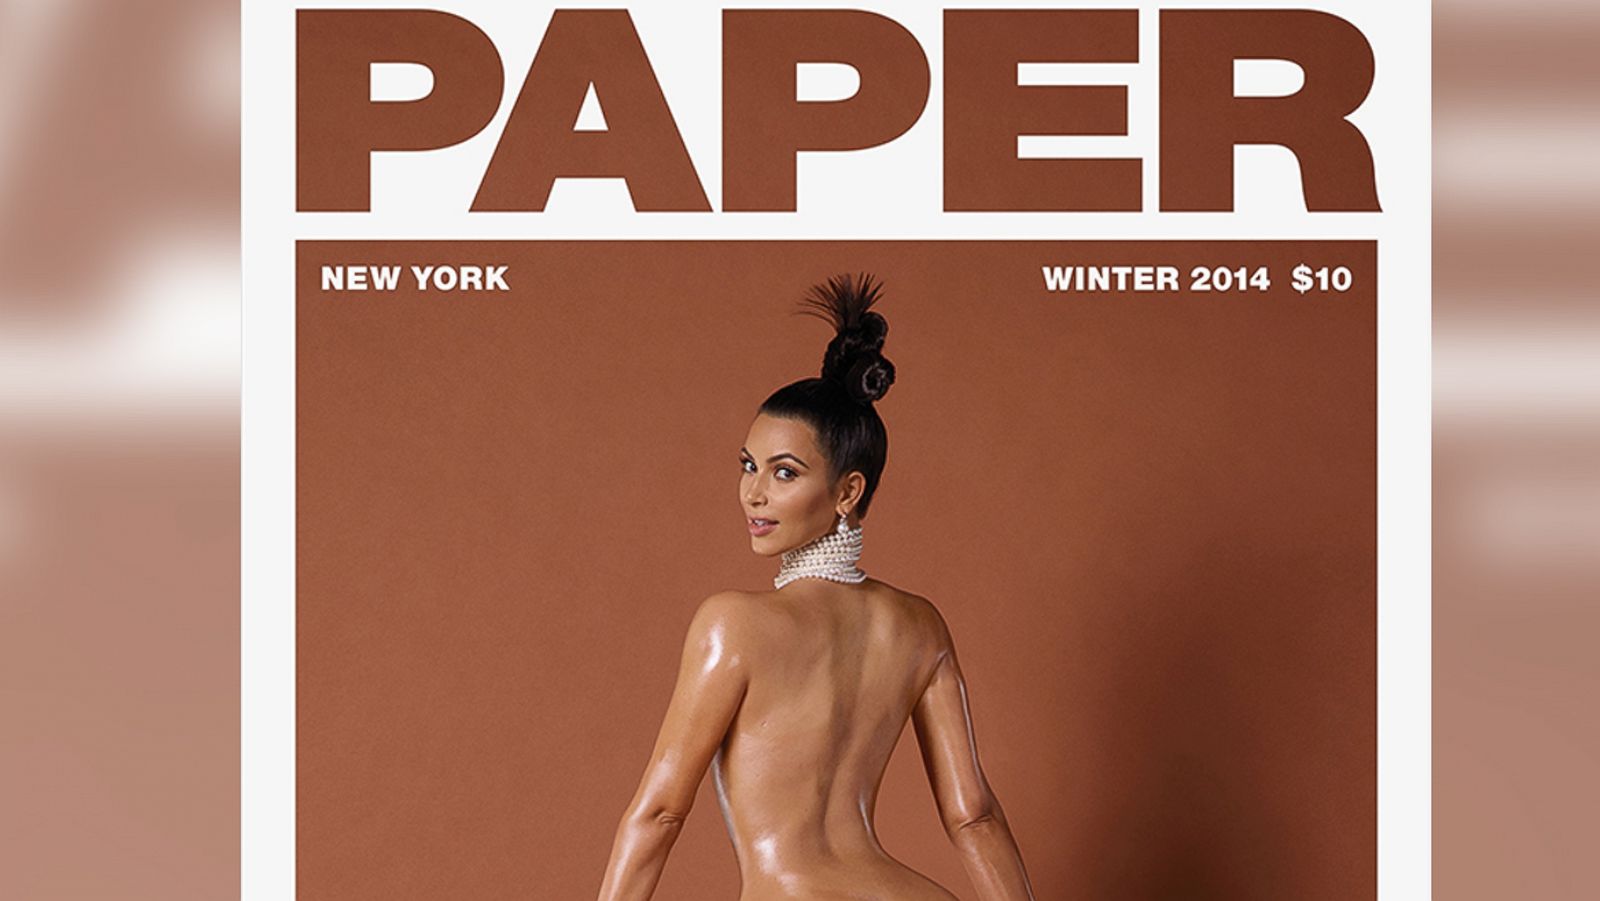 New Porn Kim Kardashian - Why Kim Kardashian Decided to Show Full-Frontal Nudity - ABC News